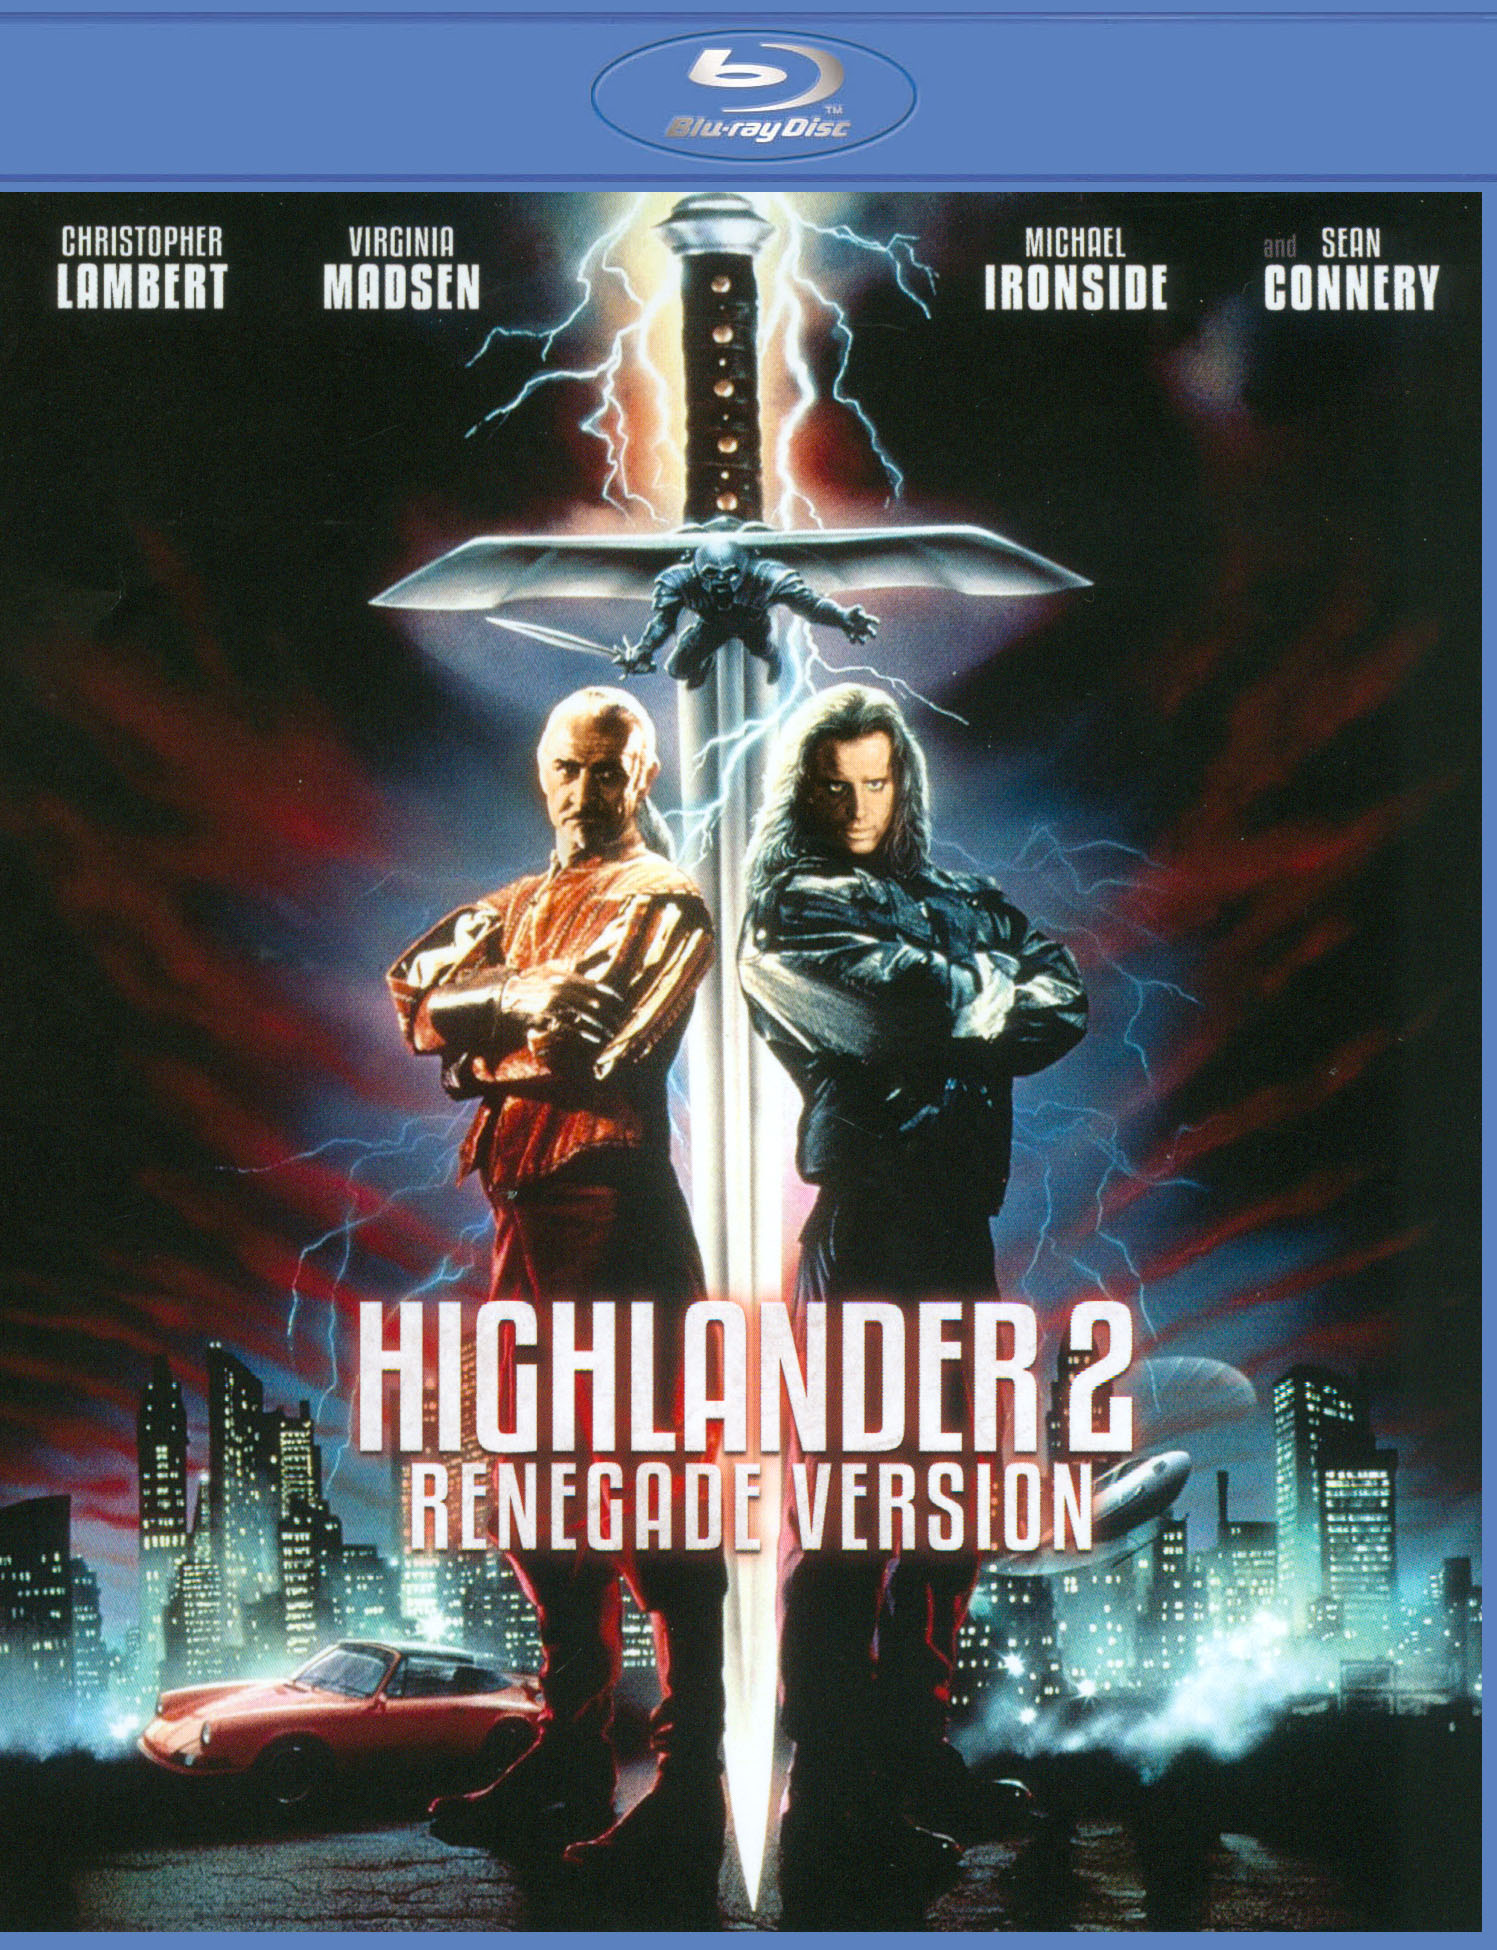 Highlander 2 [Renegade Version] [Blu-ray] [1991] - Best Buy